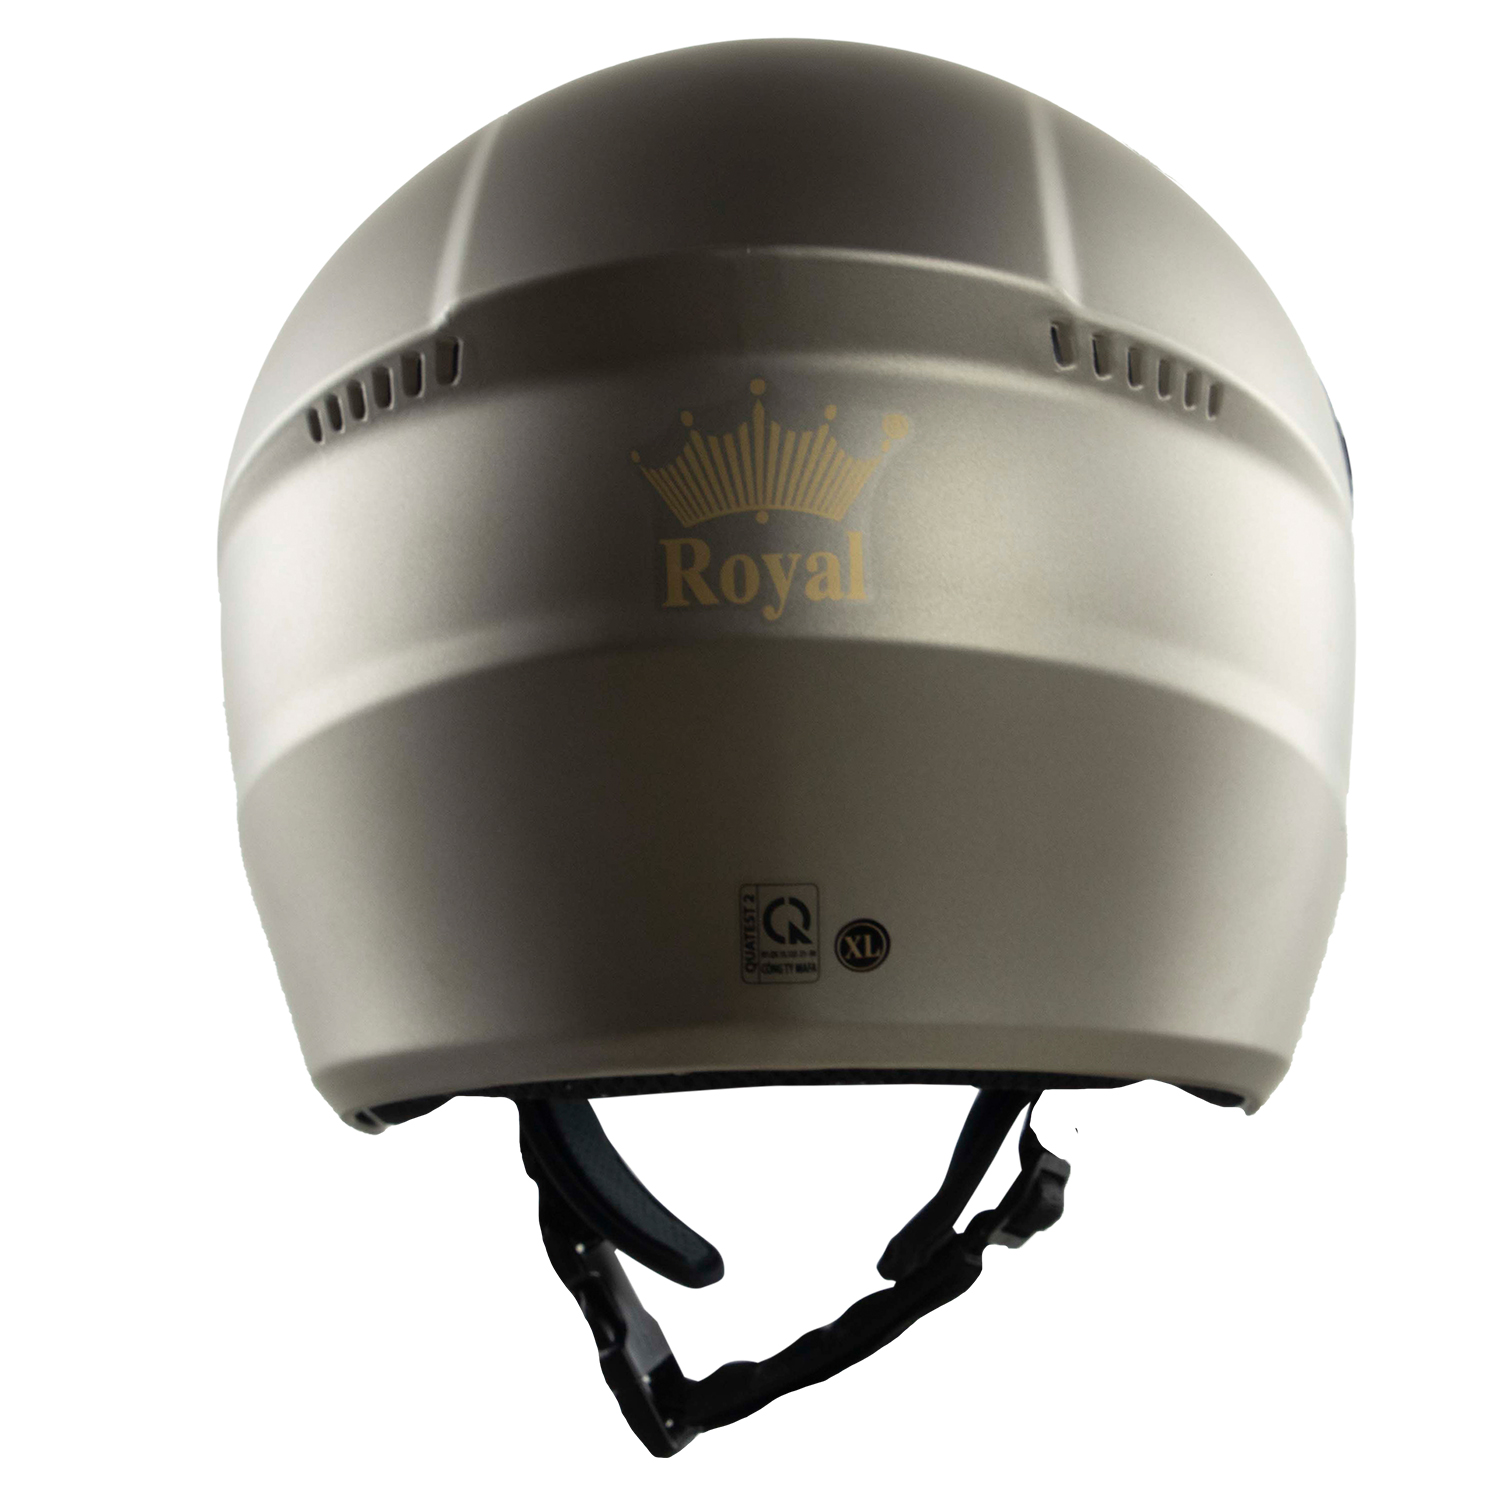 Nón bảo hiểm 3/4 Royal M268 - 2 kính tiện dụng - Xám chuột - Mạnh mẽ - Thời trang - Hàng chính hãng - Bảo hành 12 tháng